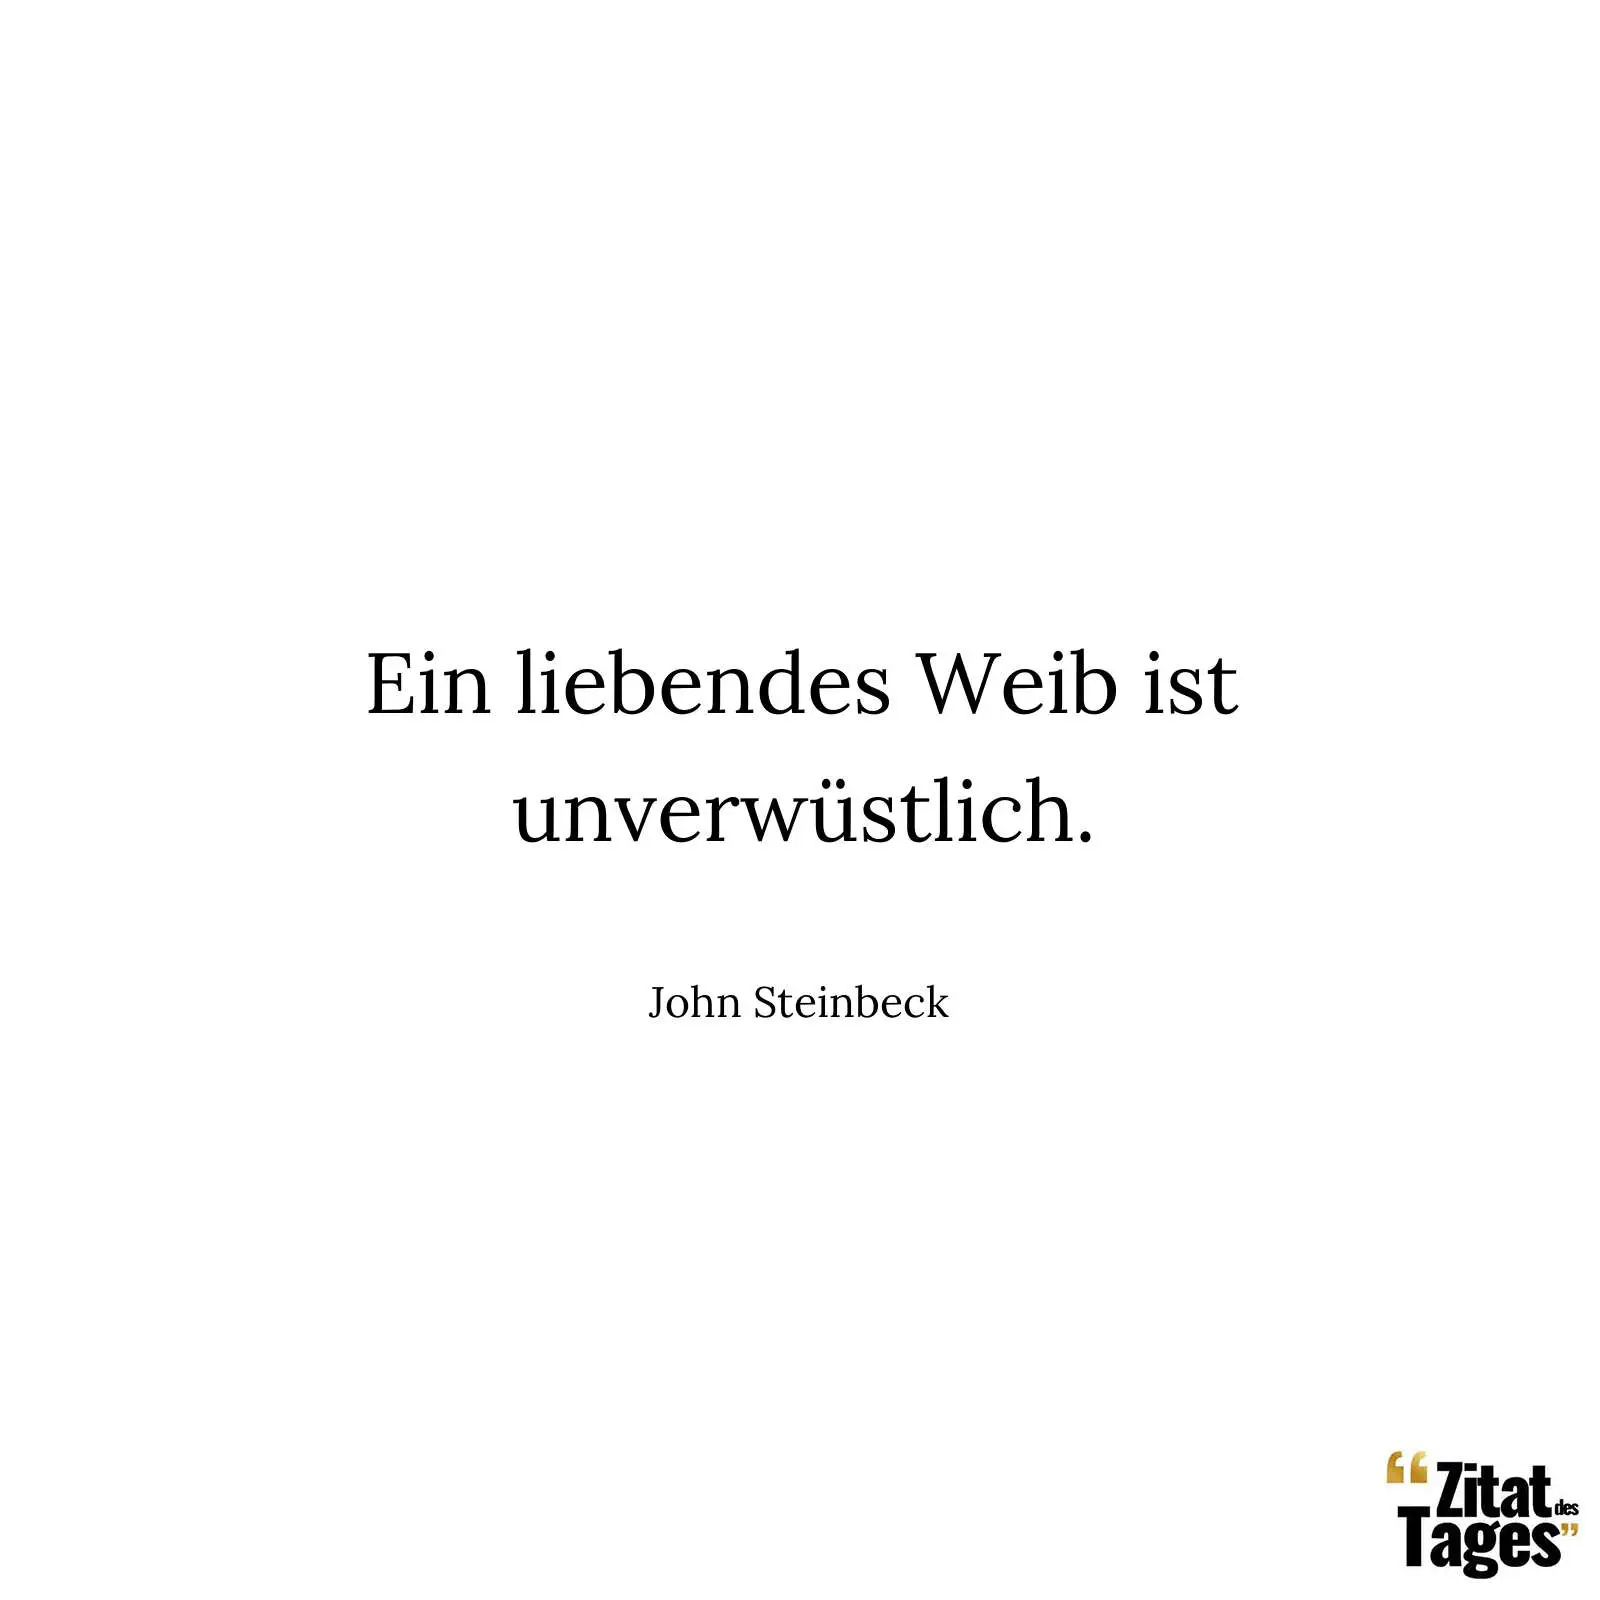 Ein liebendes Weib ist unverwüstlich. - John Steinbeck